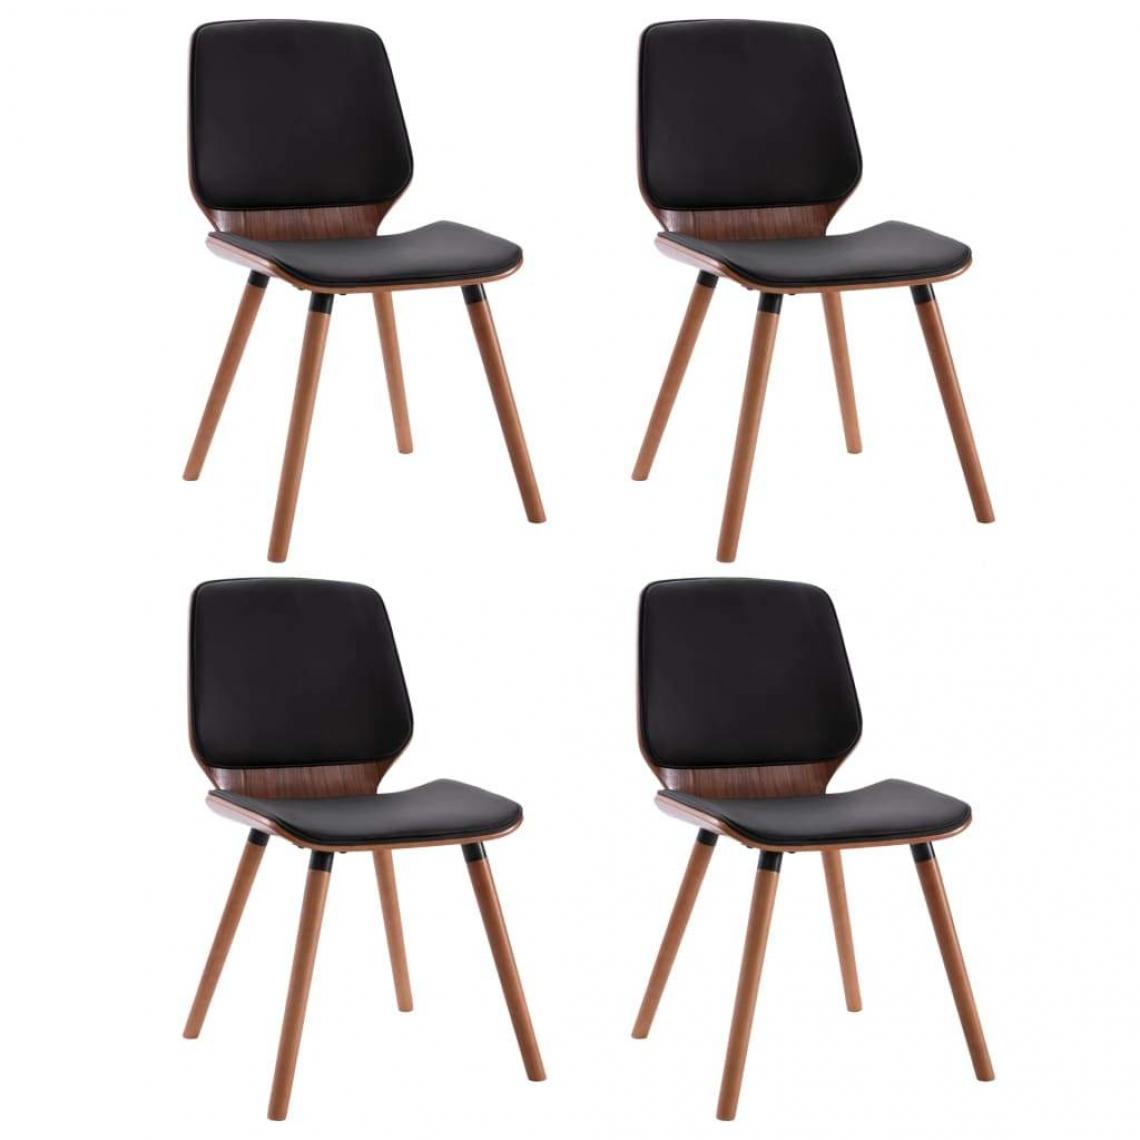 Decoshop26 - Lot de 4 chaises de salle à manger cuisine design moderne similicuir noir CDS021821 - Chaises